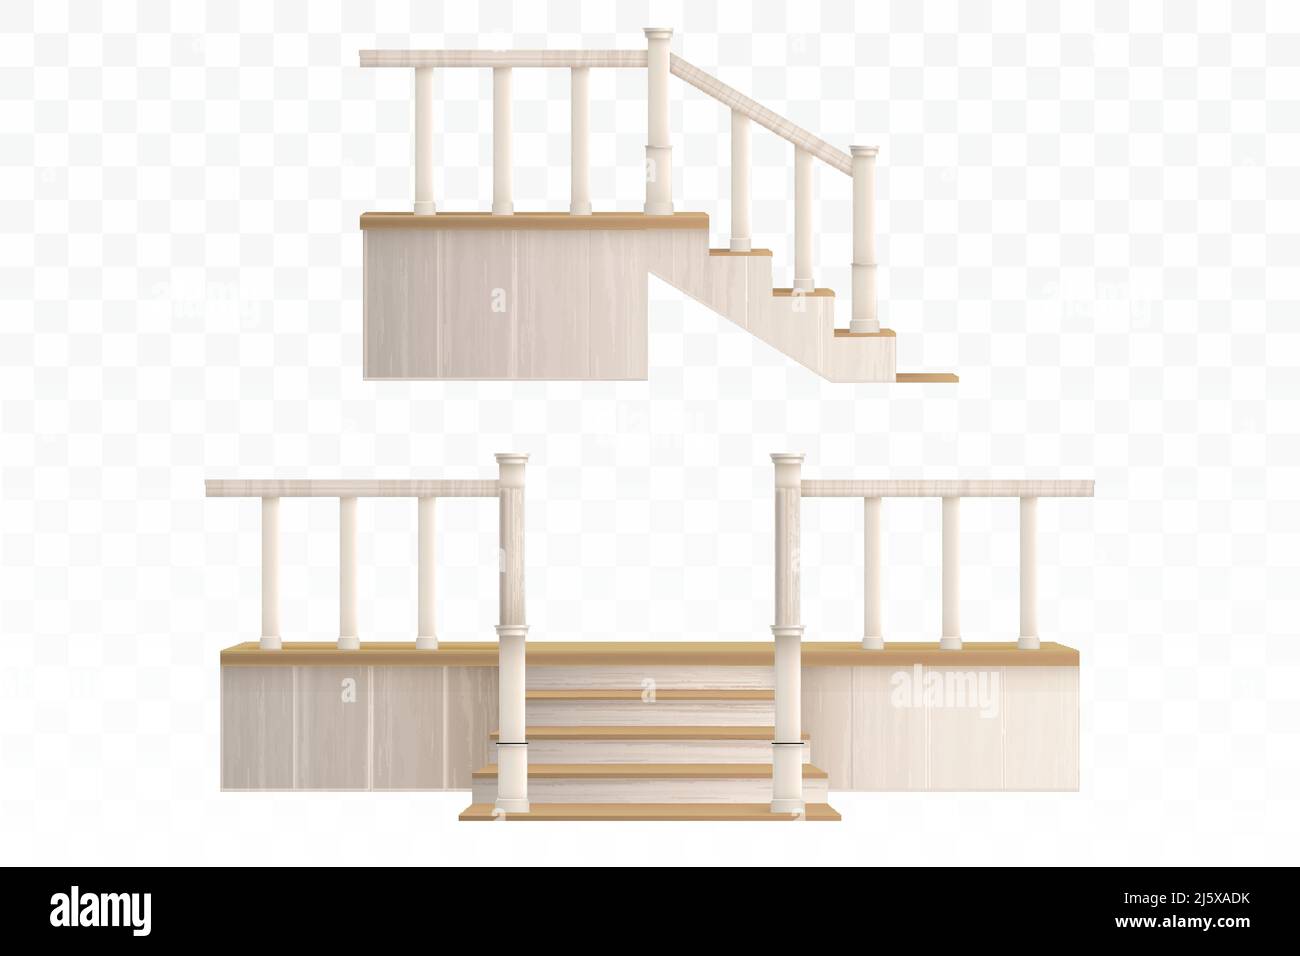 Hölzerne Veranda Treppe mit dekorativen Balustrade und Säulen Vorder-und Seitenansicht. Vector realistische 3D Außentreppen mit Geländern von der Terrasse Stock Vektor